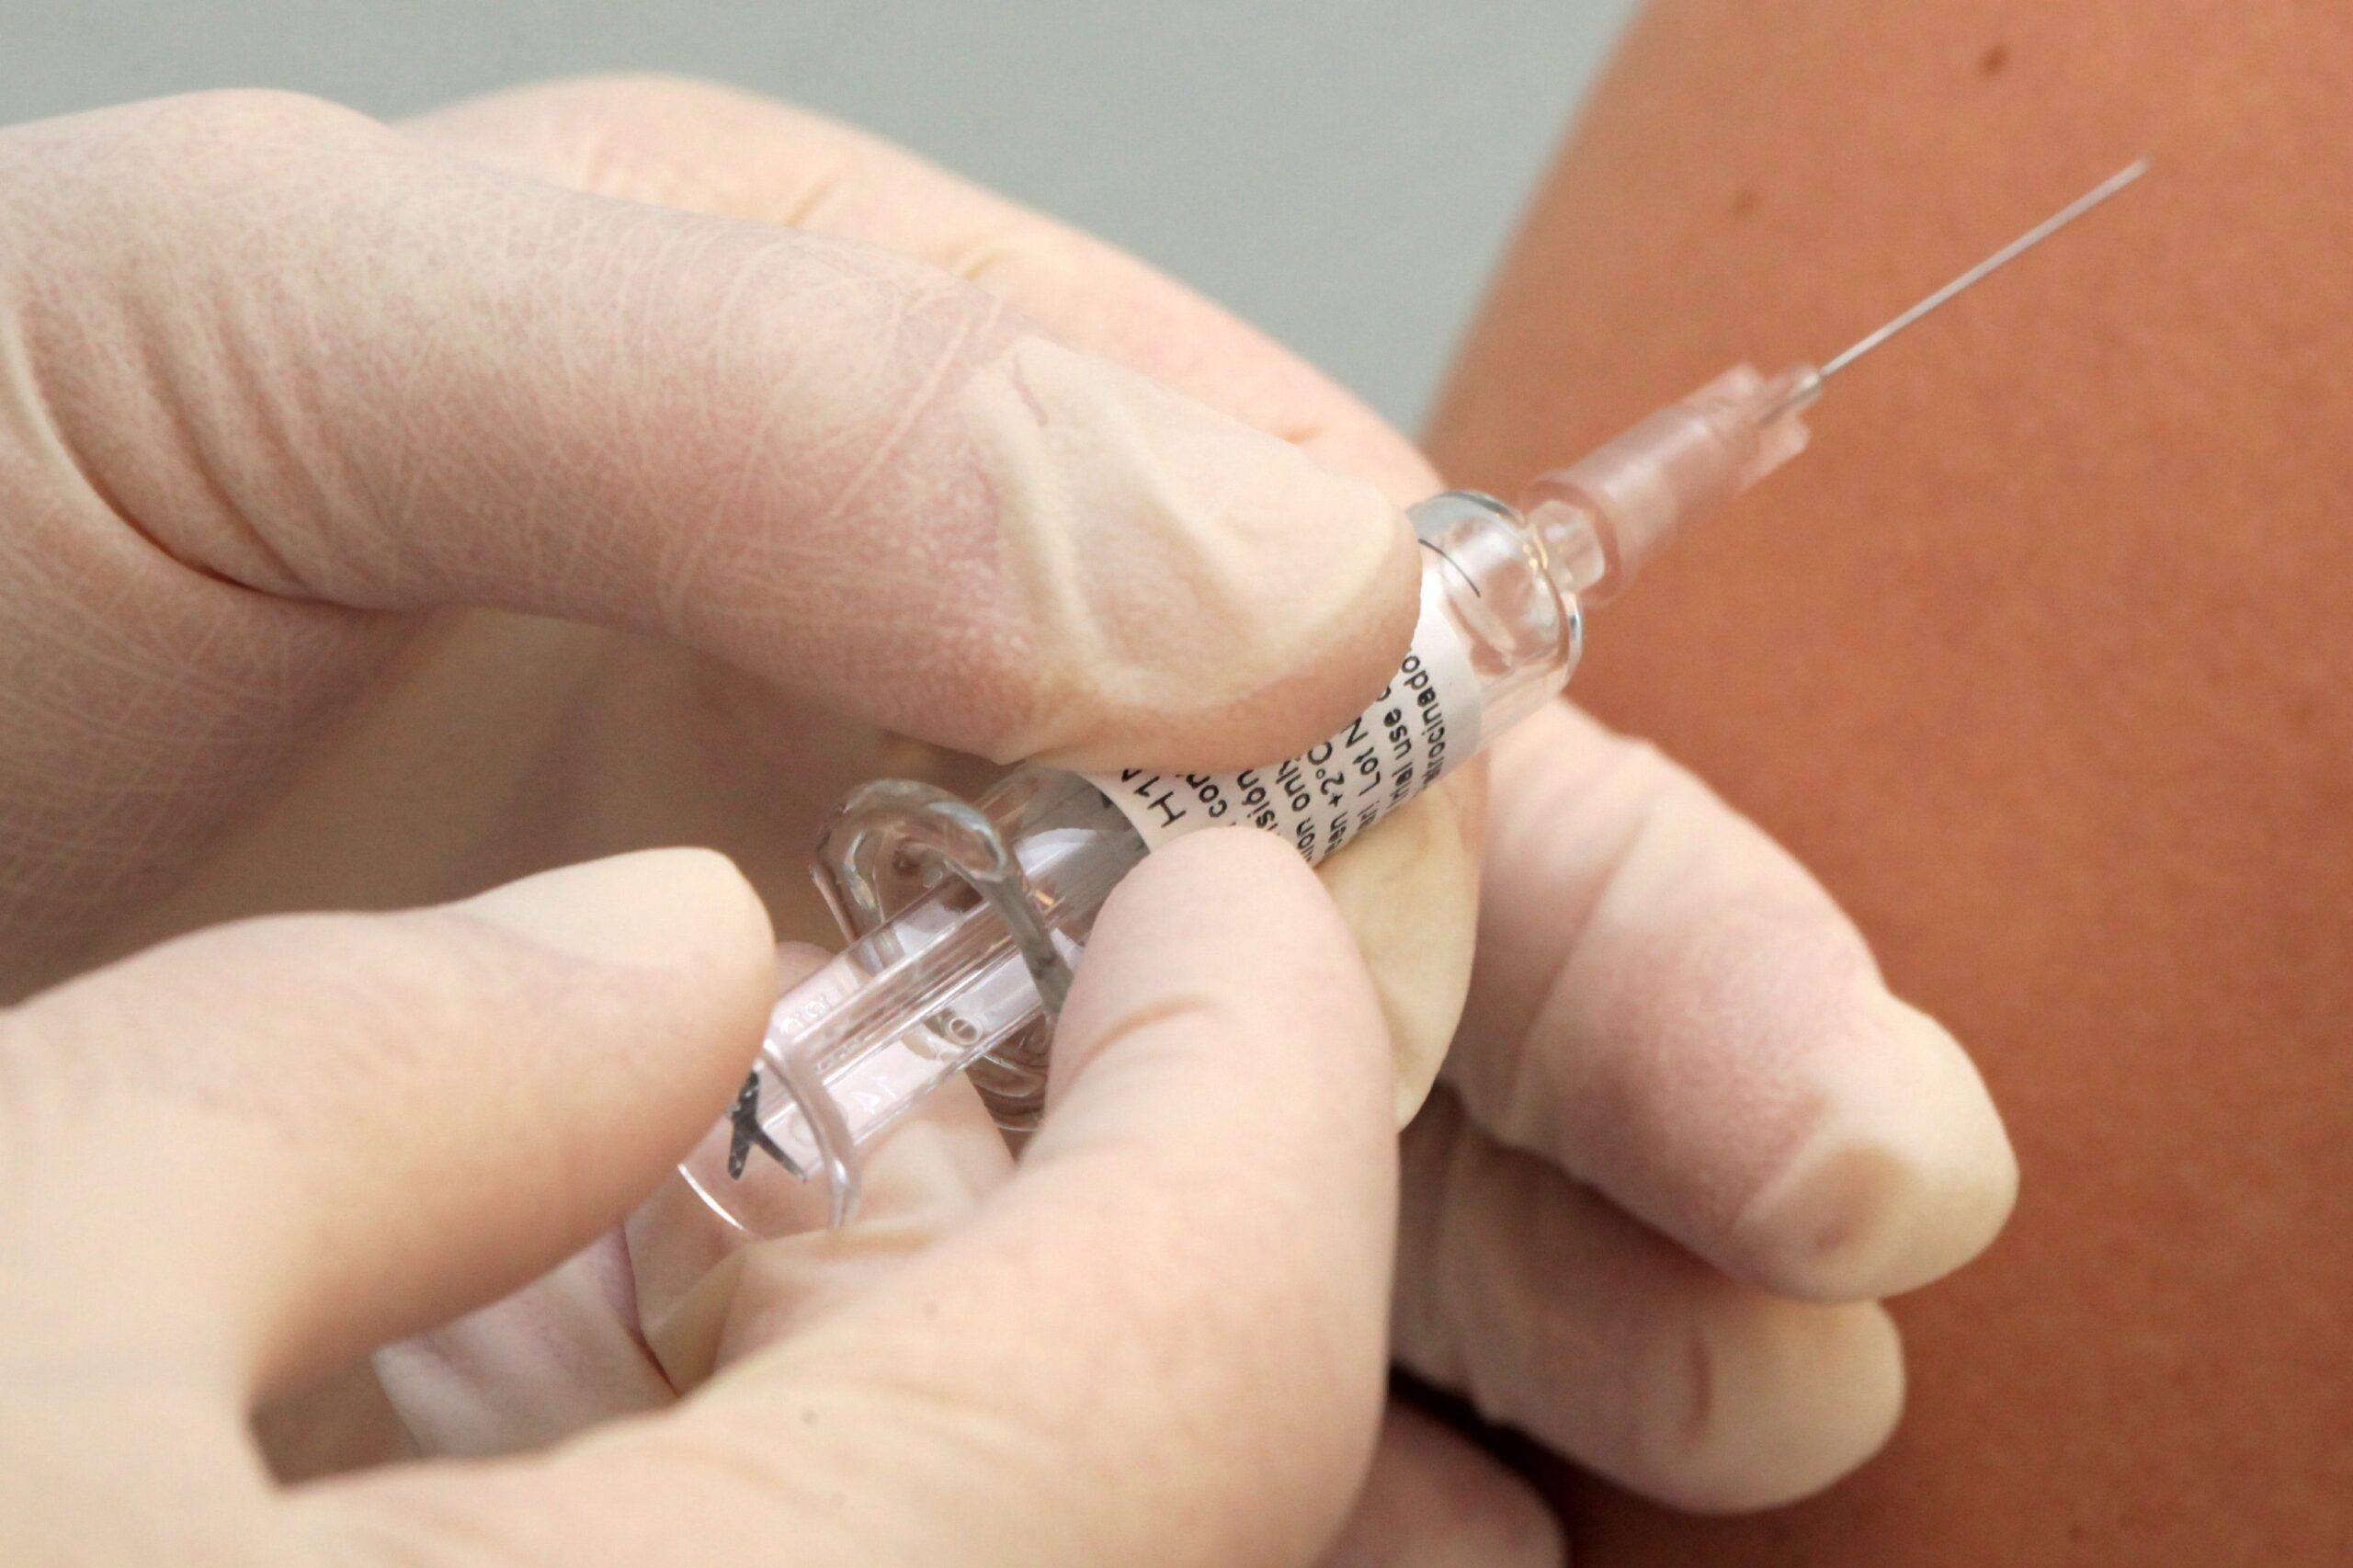 Tests of swine flu vaccine